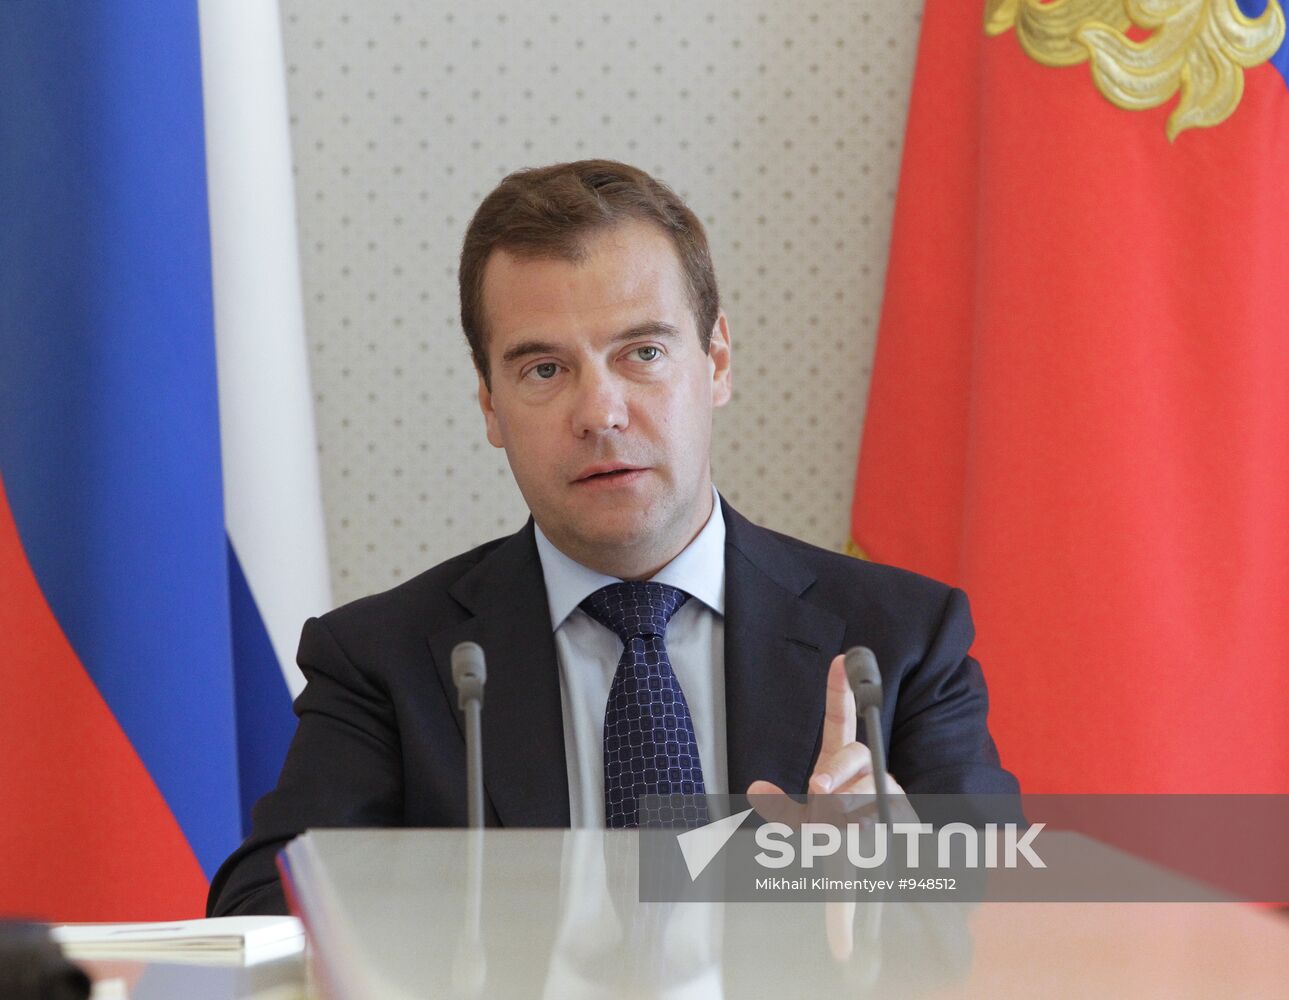 Dmitry Medvedev holds meeting at Bocharov Rechei residence